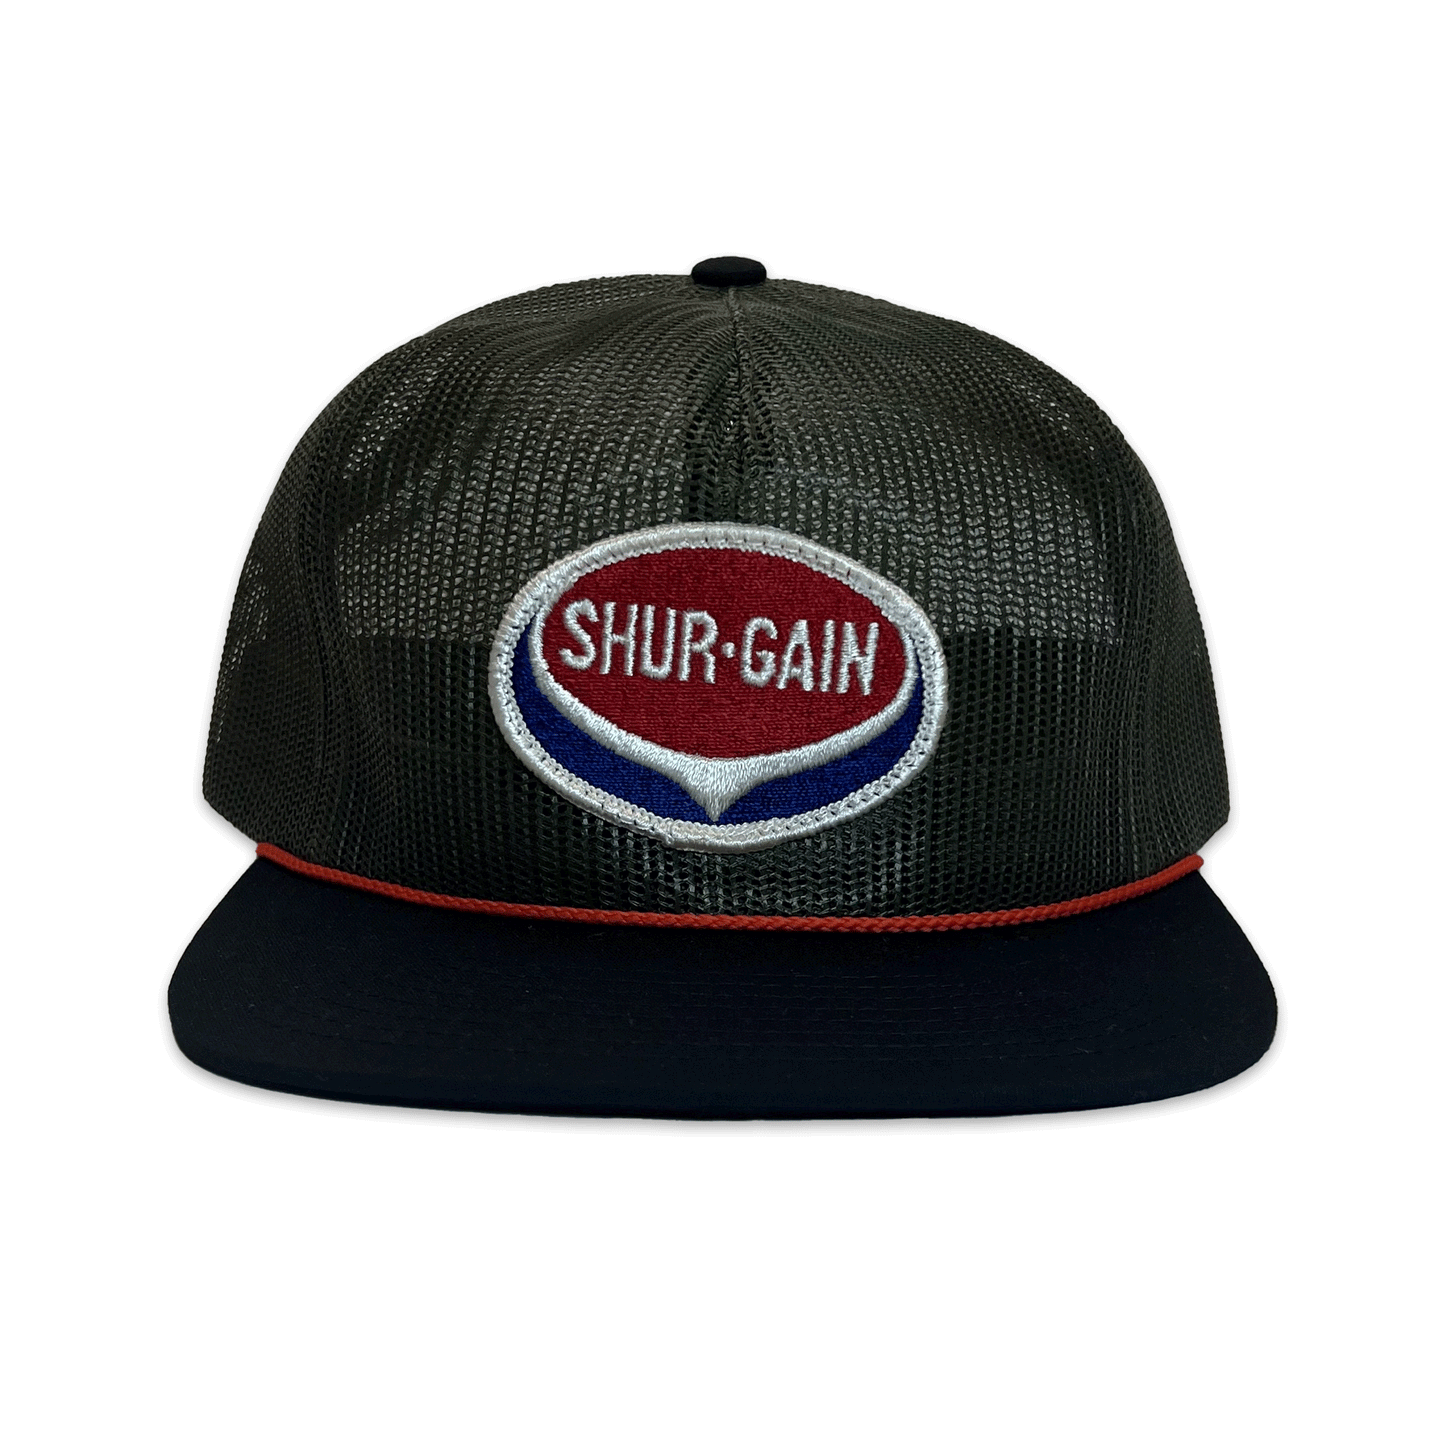 Shur-Gain. Full Mesh Hat. Green/Black.